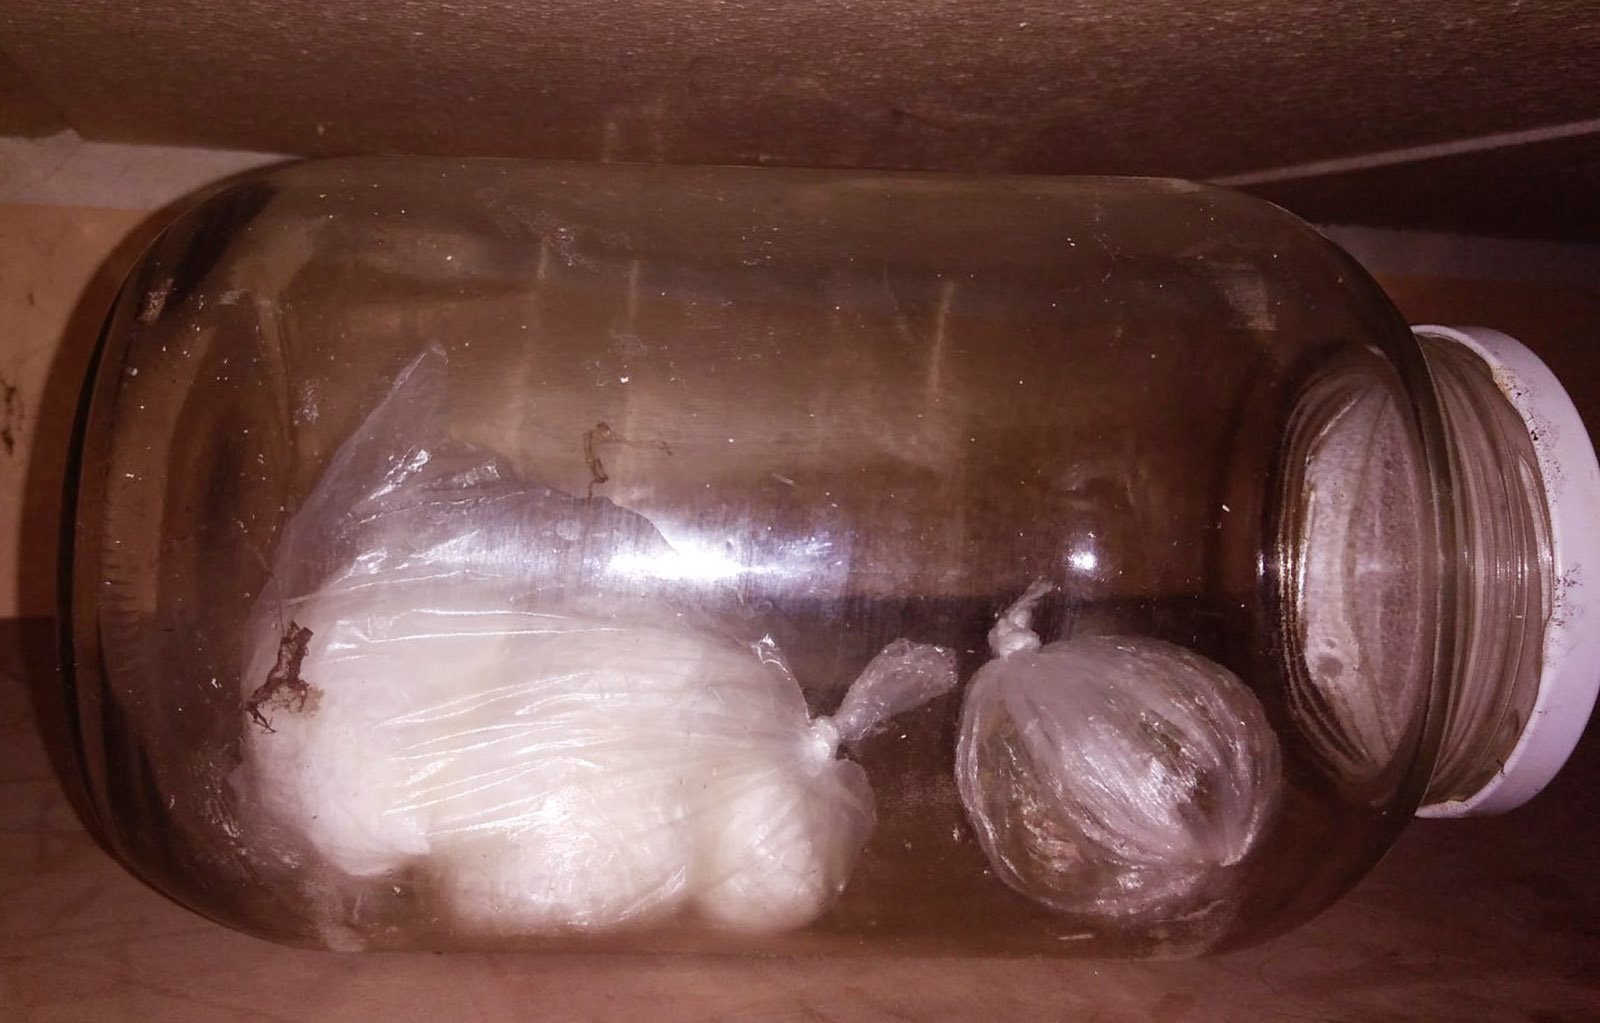 Policija zaplenila oko 1,8 kilograma marihuane, više od 1,5 kilograma amfetamina i uhapsila pet osoba